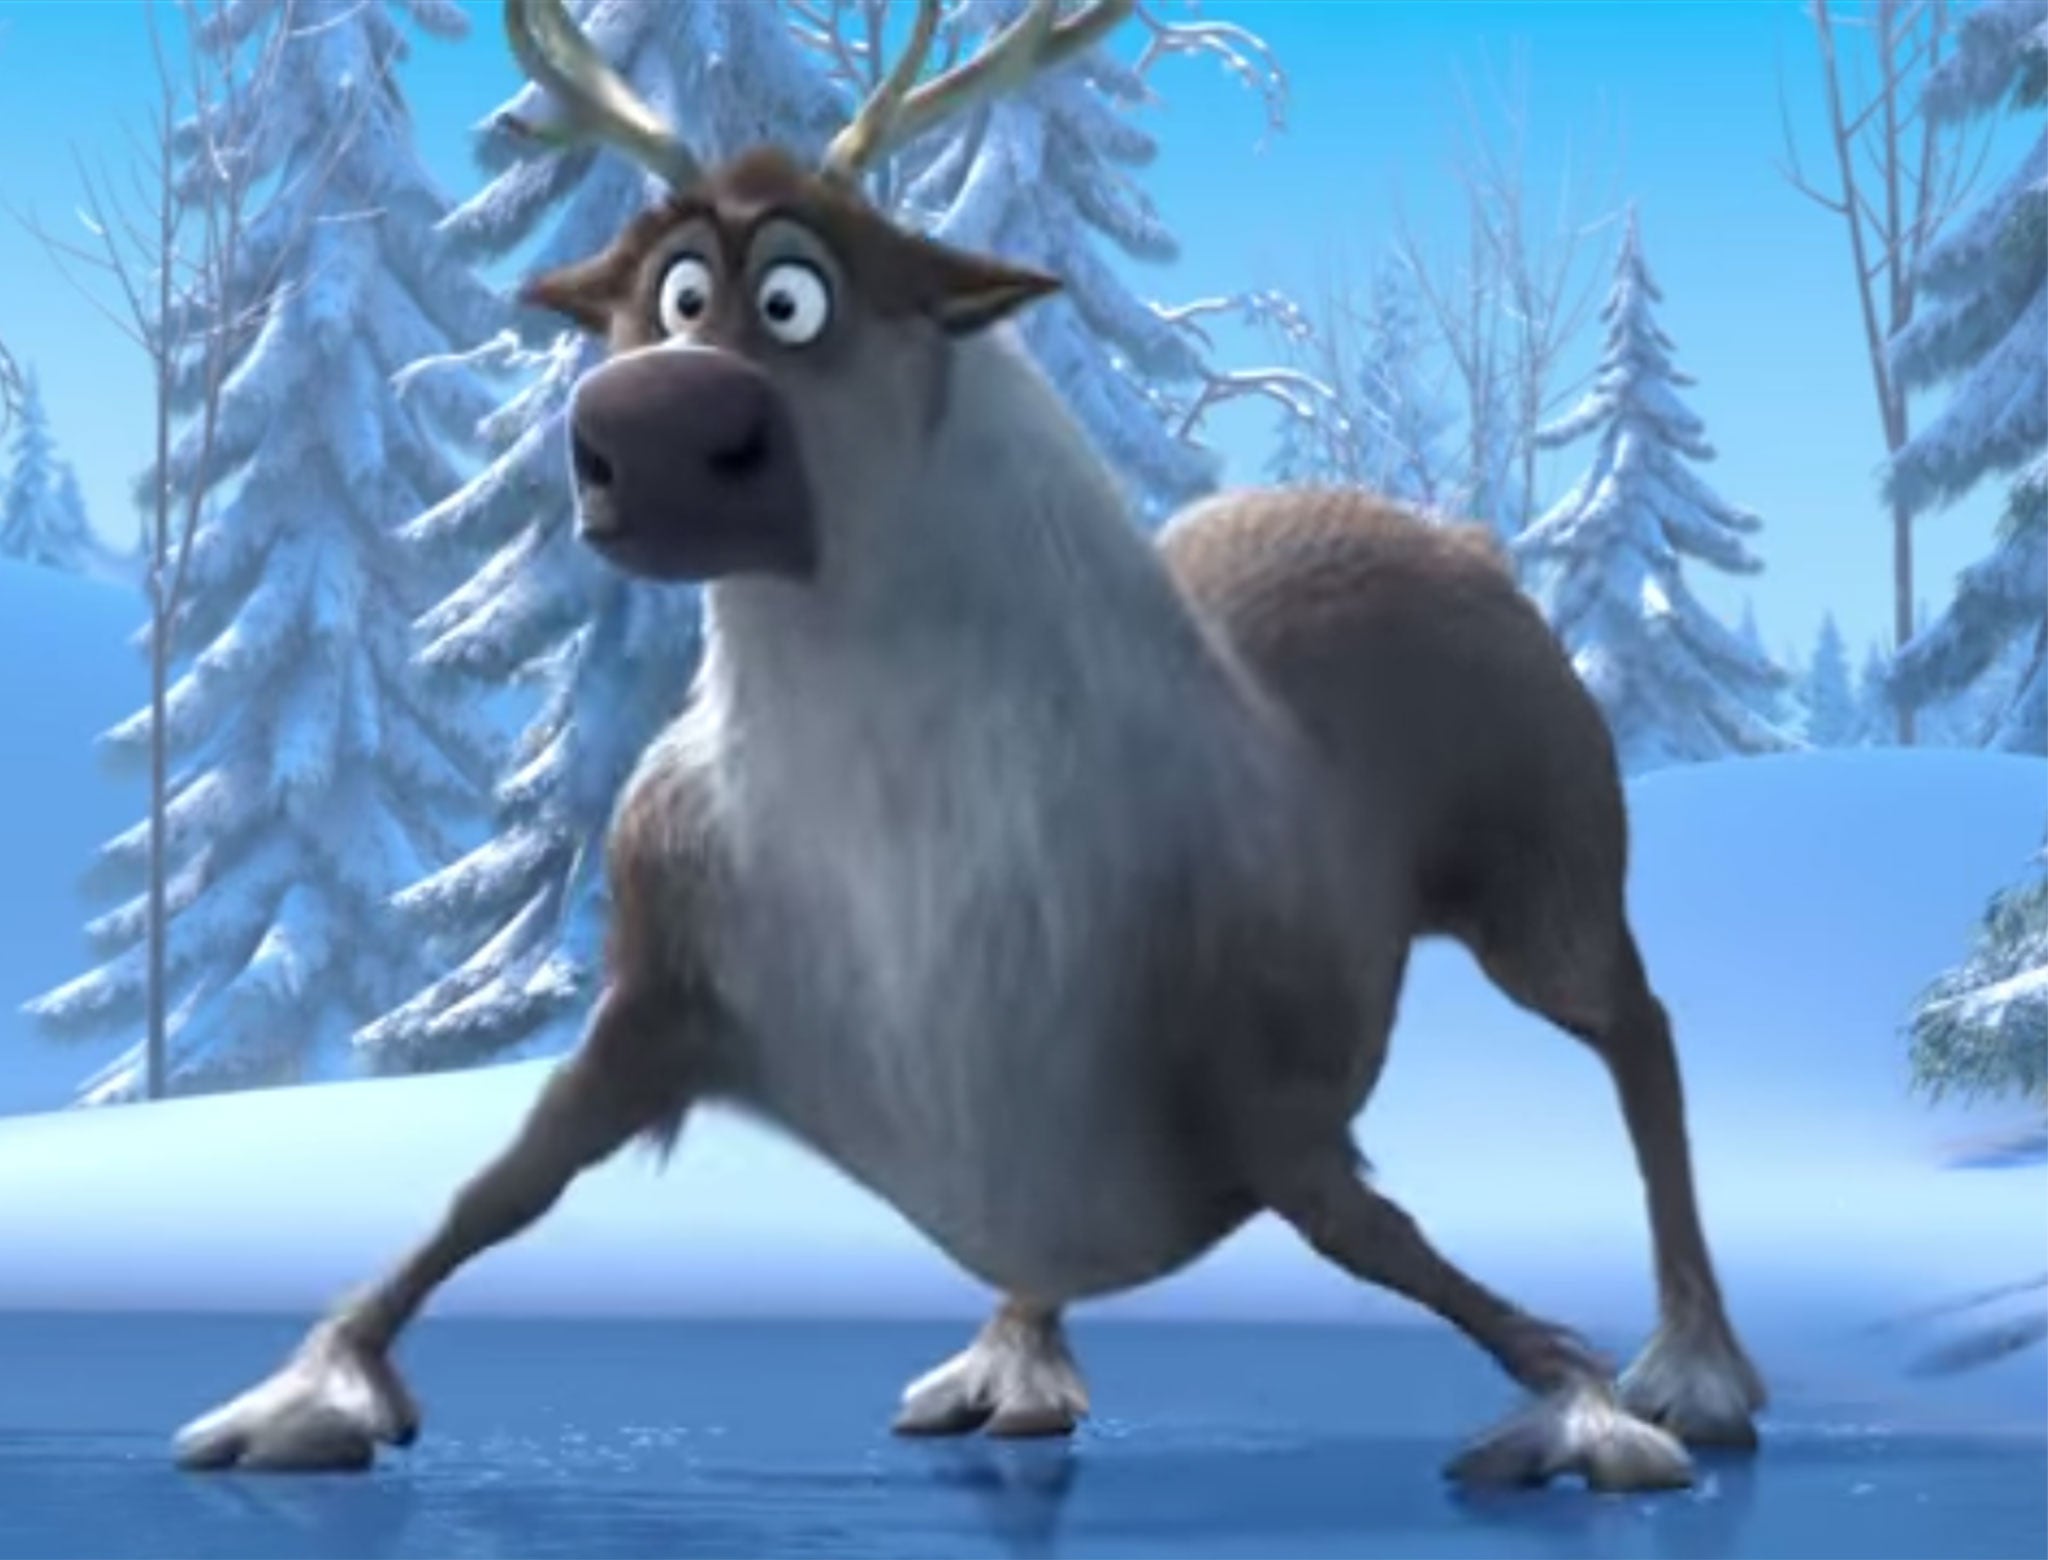 Sven the reindeer